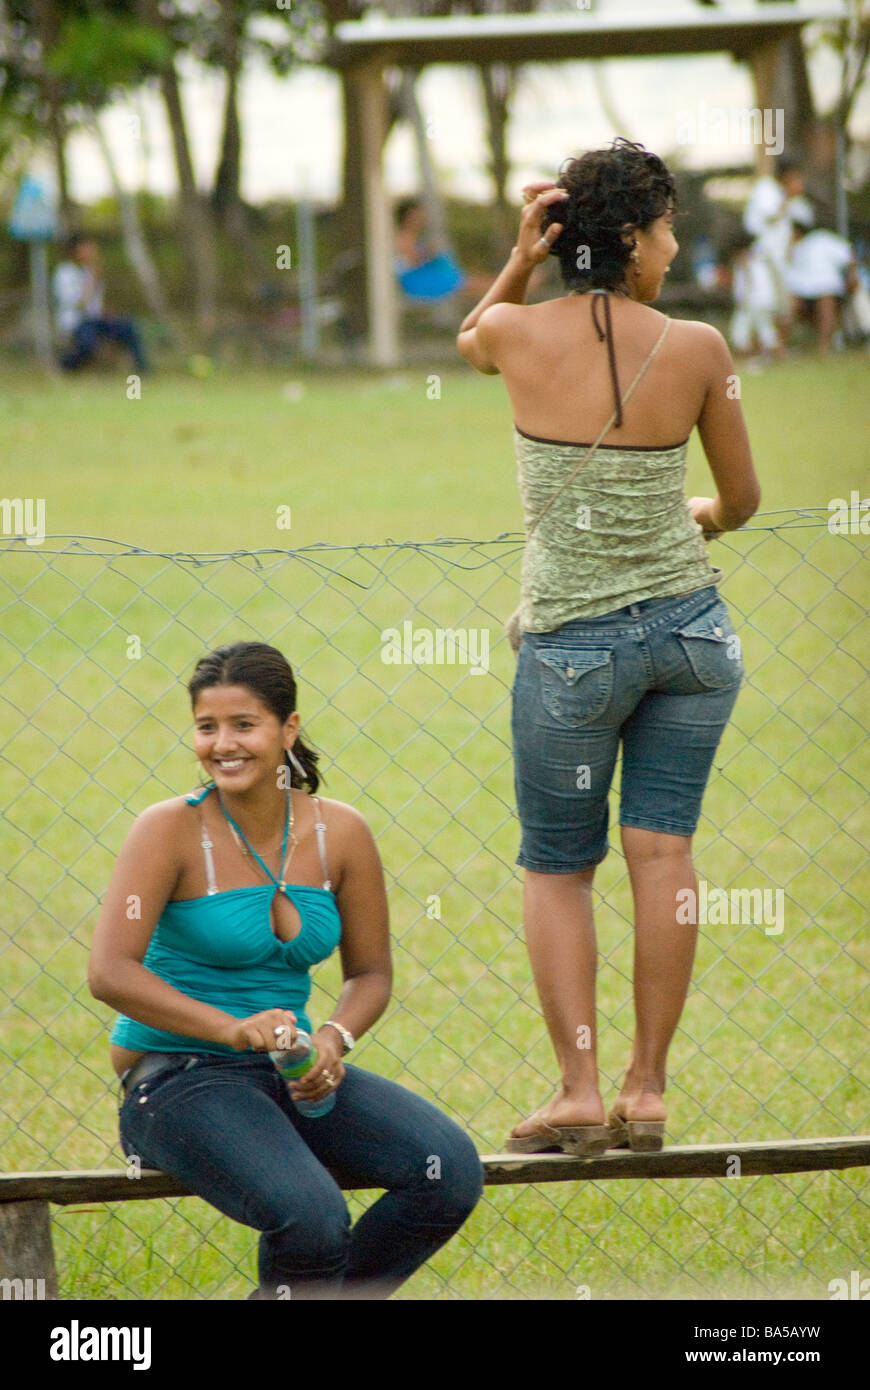 Spectators at a female soccer match during a fiesta in Costa Rica Stock Photo